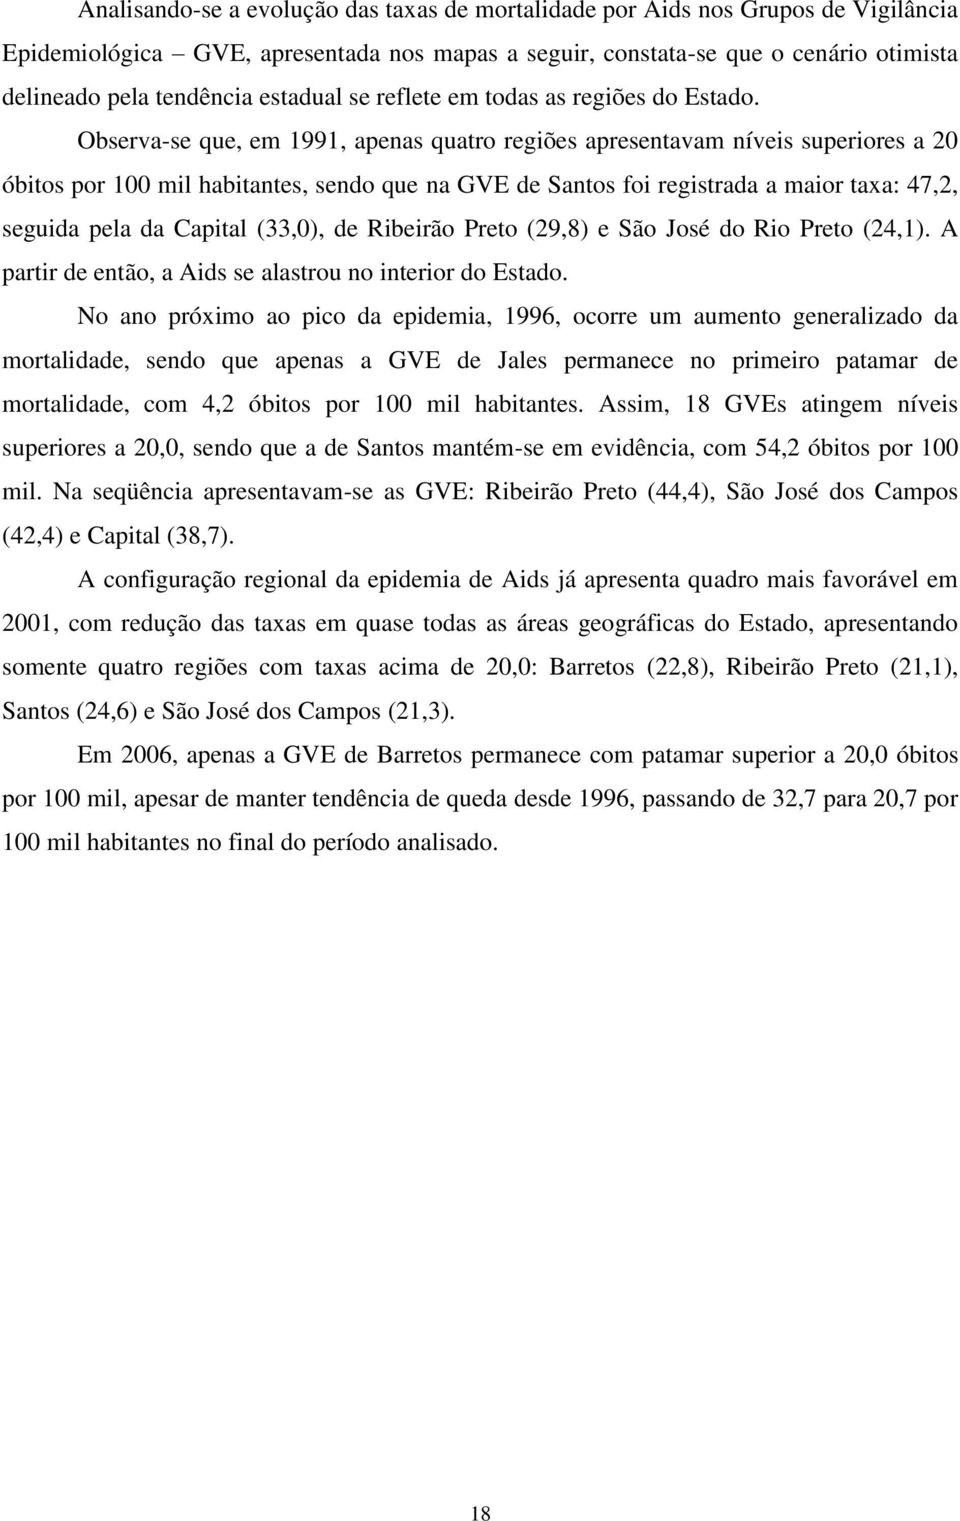 Observa-se que, em 1991, apenas quatro regiões apresentavam níveis superiores a 20 óbitos por 100 mil habitantes, sendo que na GVE de Santos foi registrada a maior taxa: 47,2, seguida pela da Capital